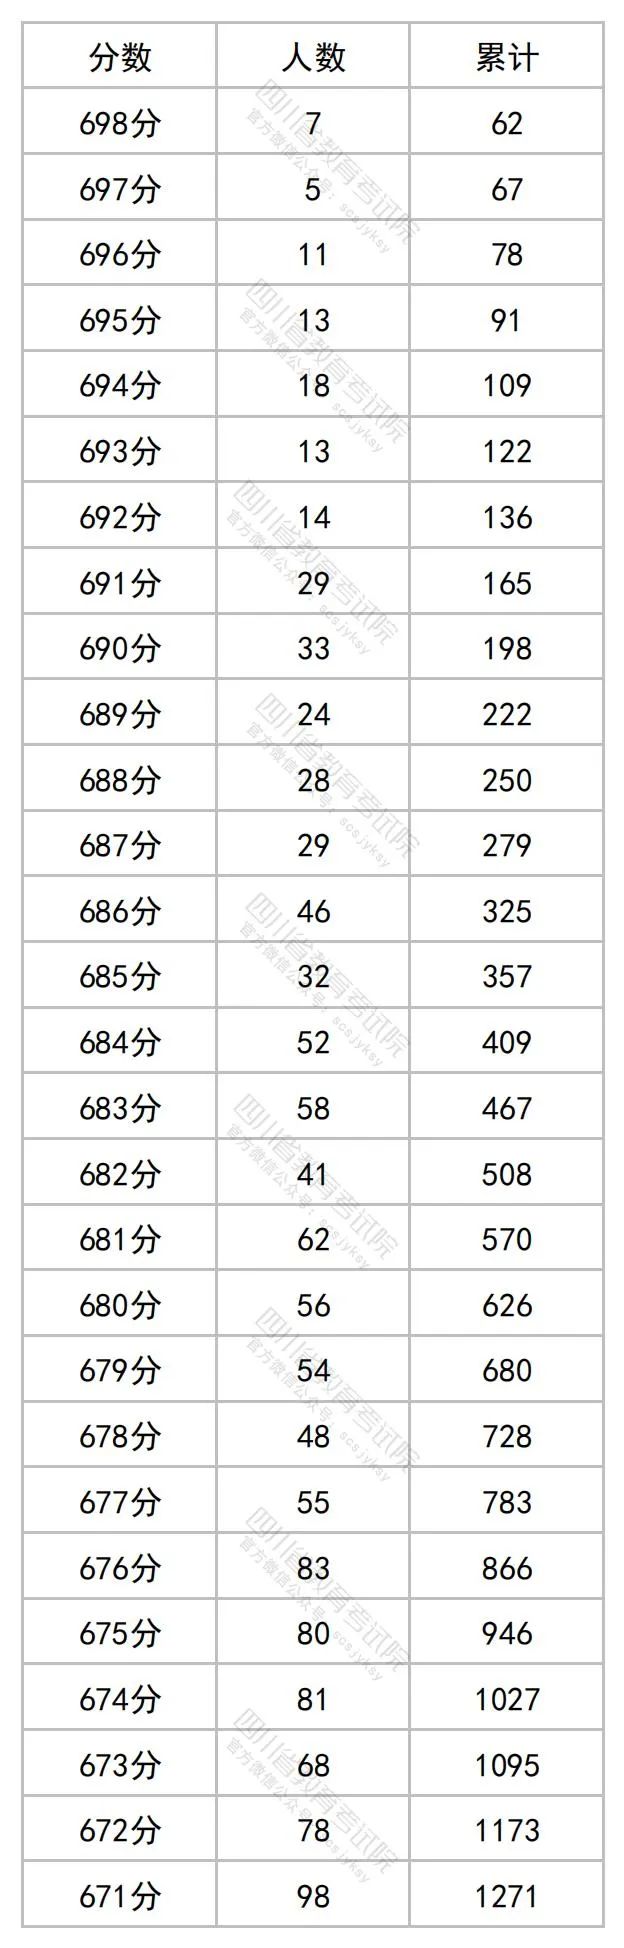 2023四川高考理科一分一段表公布 最新高考成绩排名1.jpg